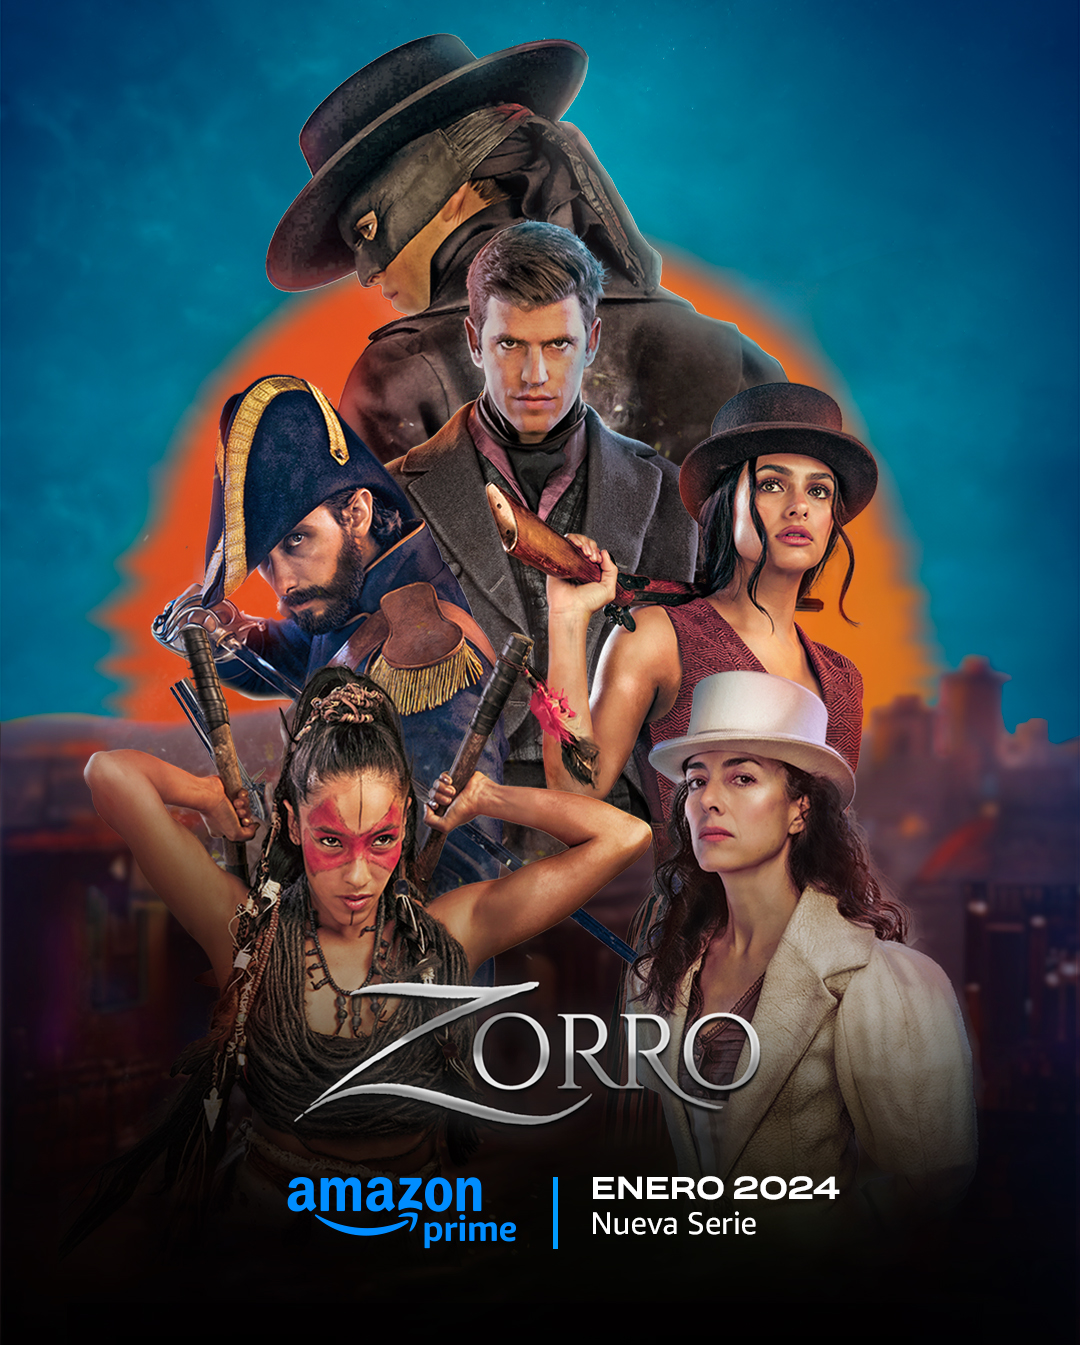 Amazon dizisi Zorro 19 Ocak’ta başlıyor.